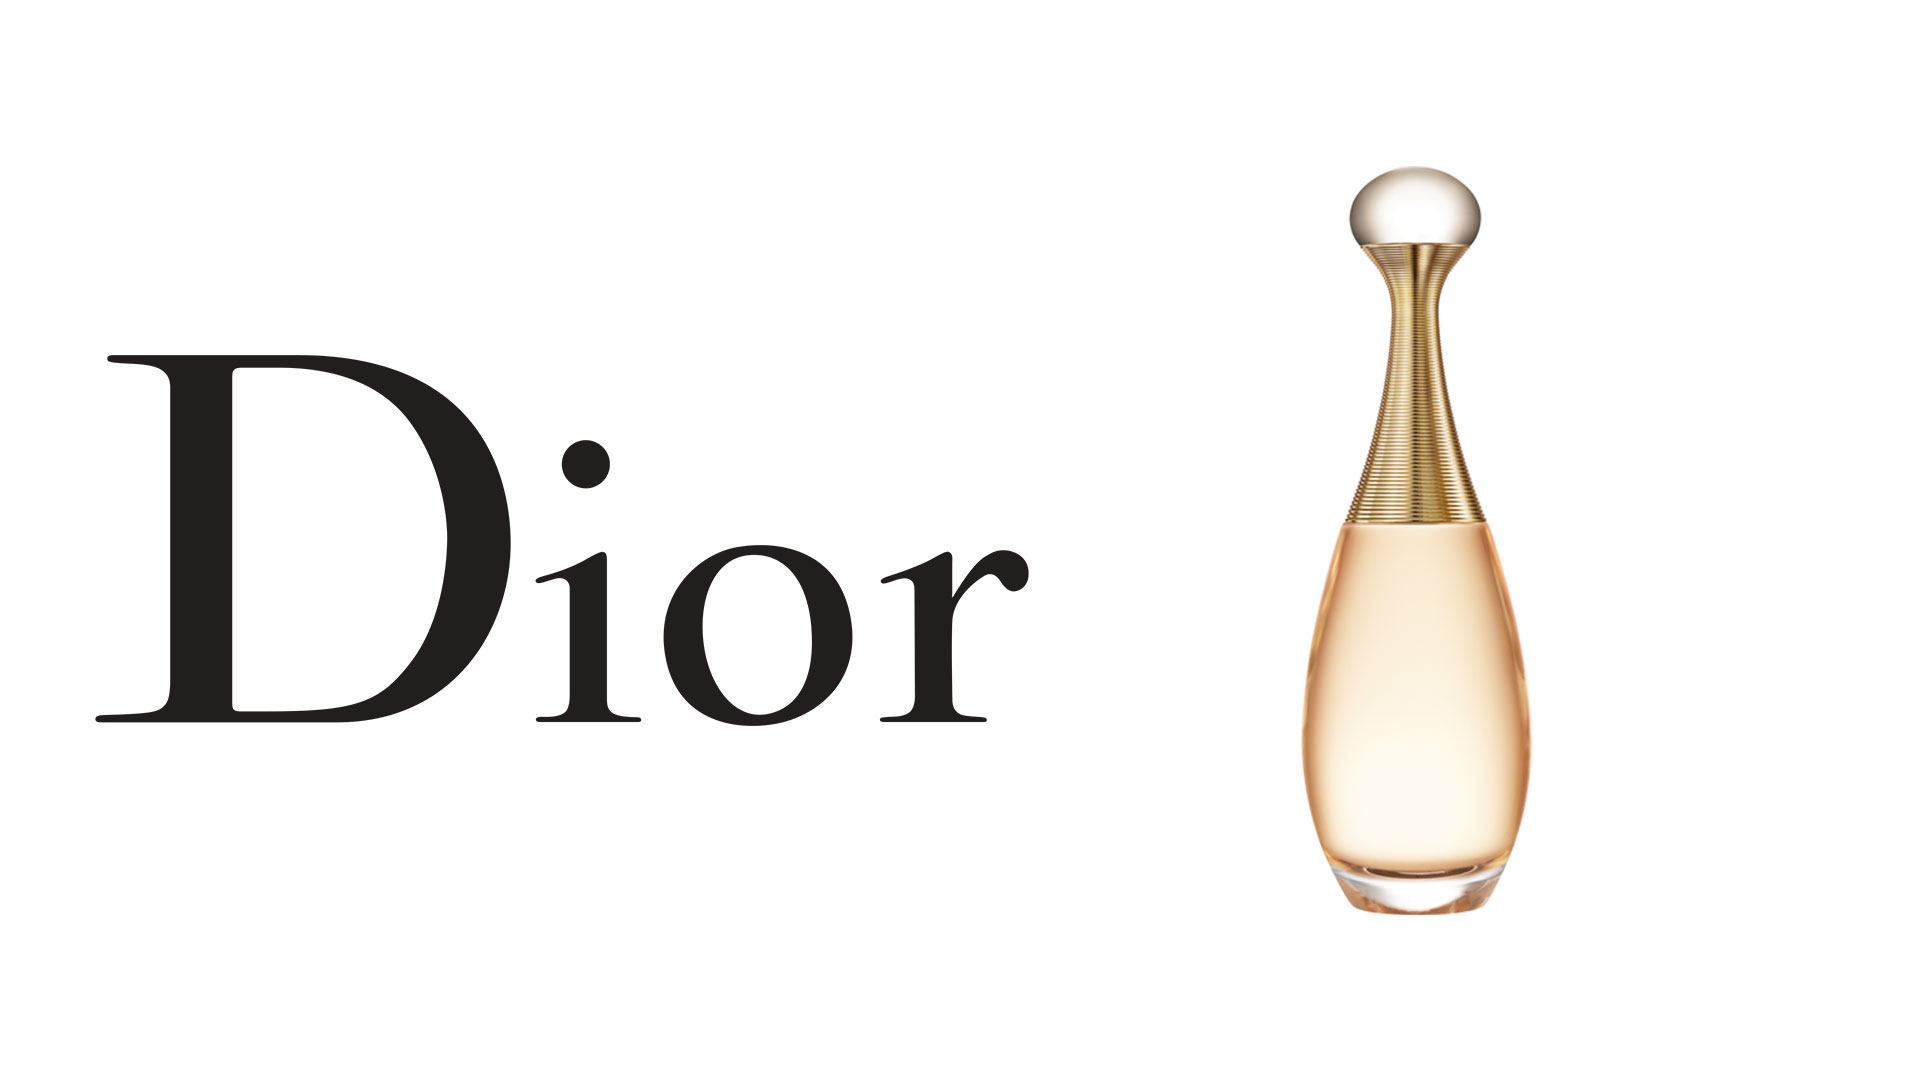 Christian Dior Jadore logo